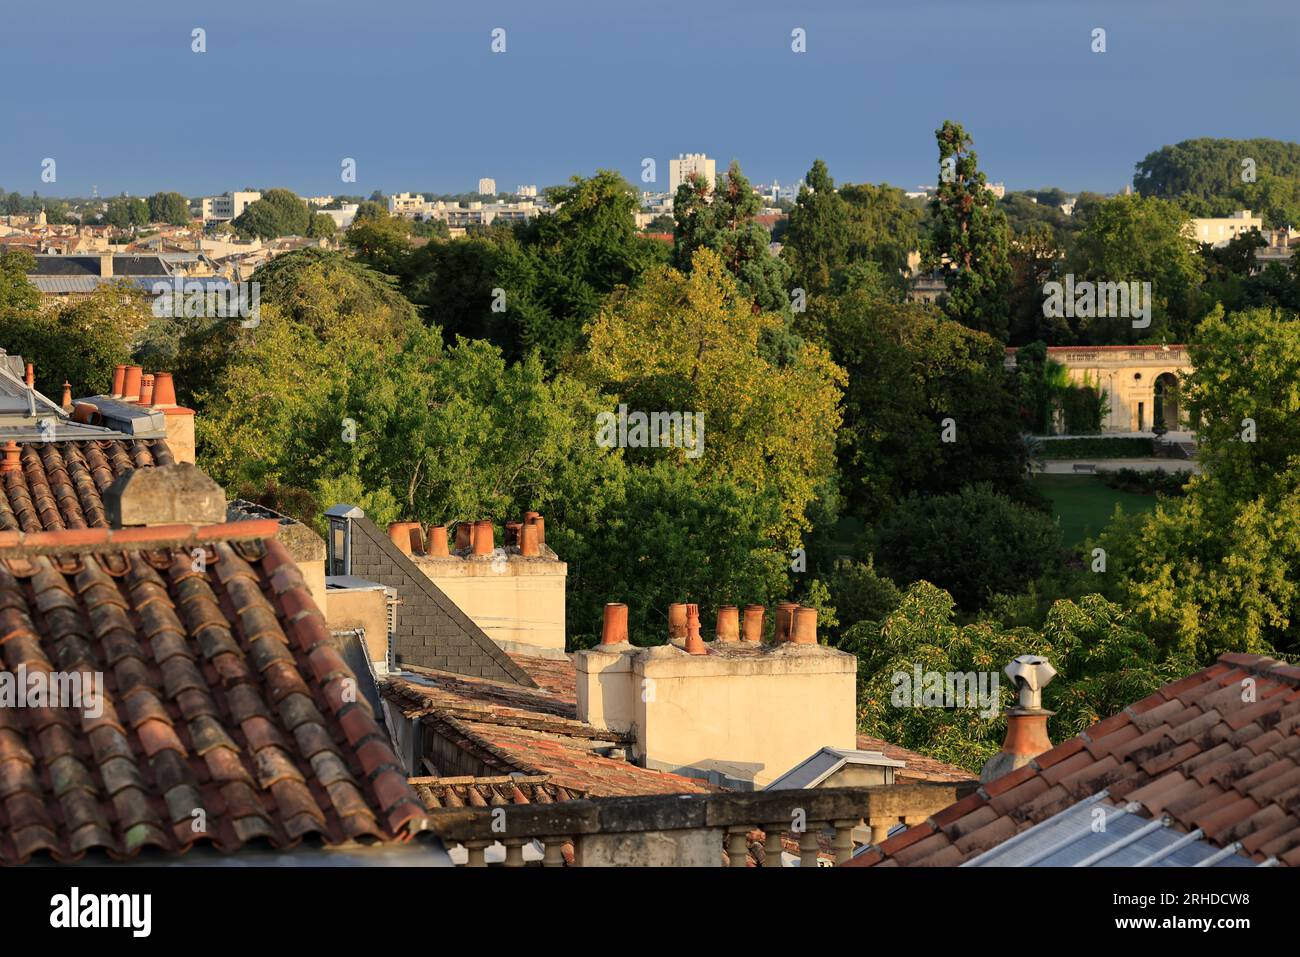 Cheminées sur les toits de Bordeaux, un aspect méconnu de la ville et de son architecture. Bordeaux, Gironde, France, Europe Stock Photo